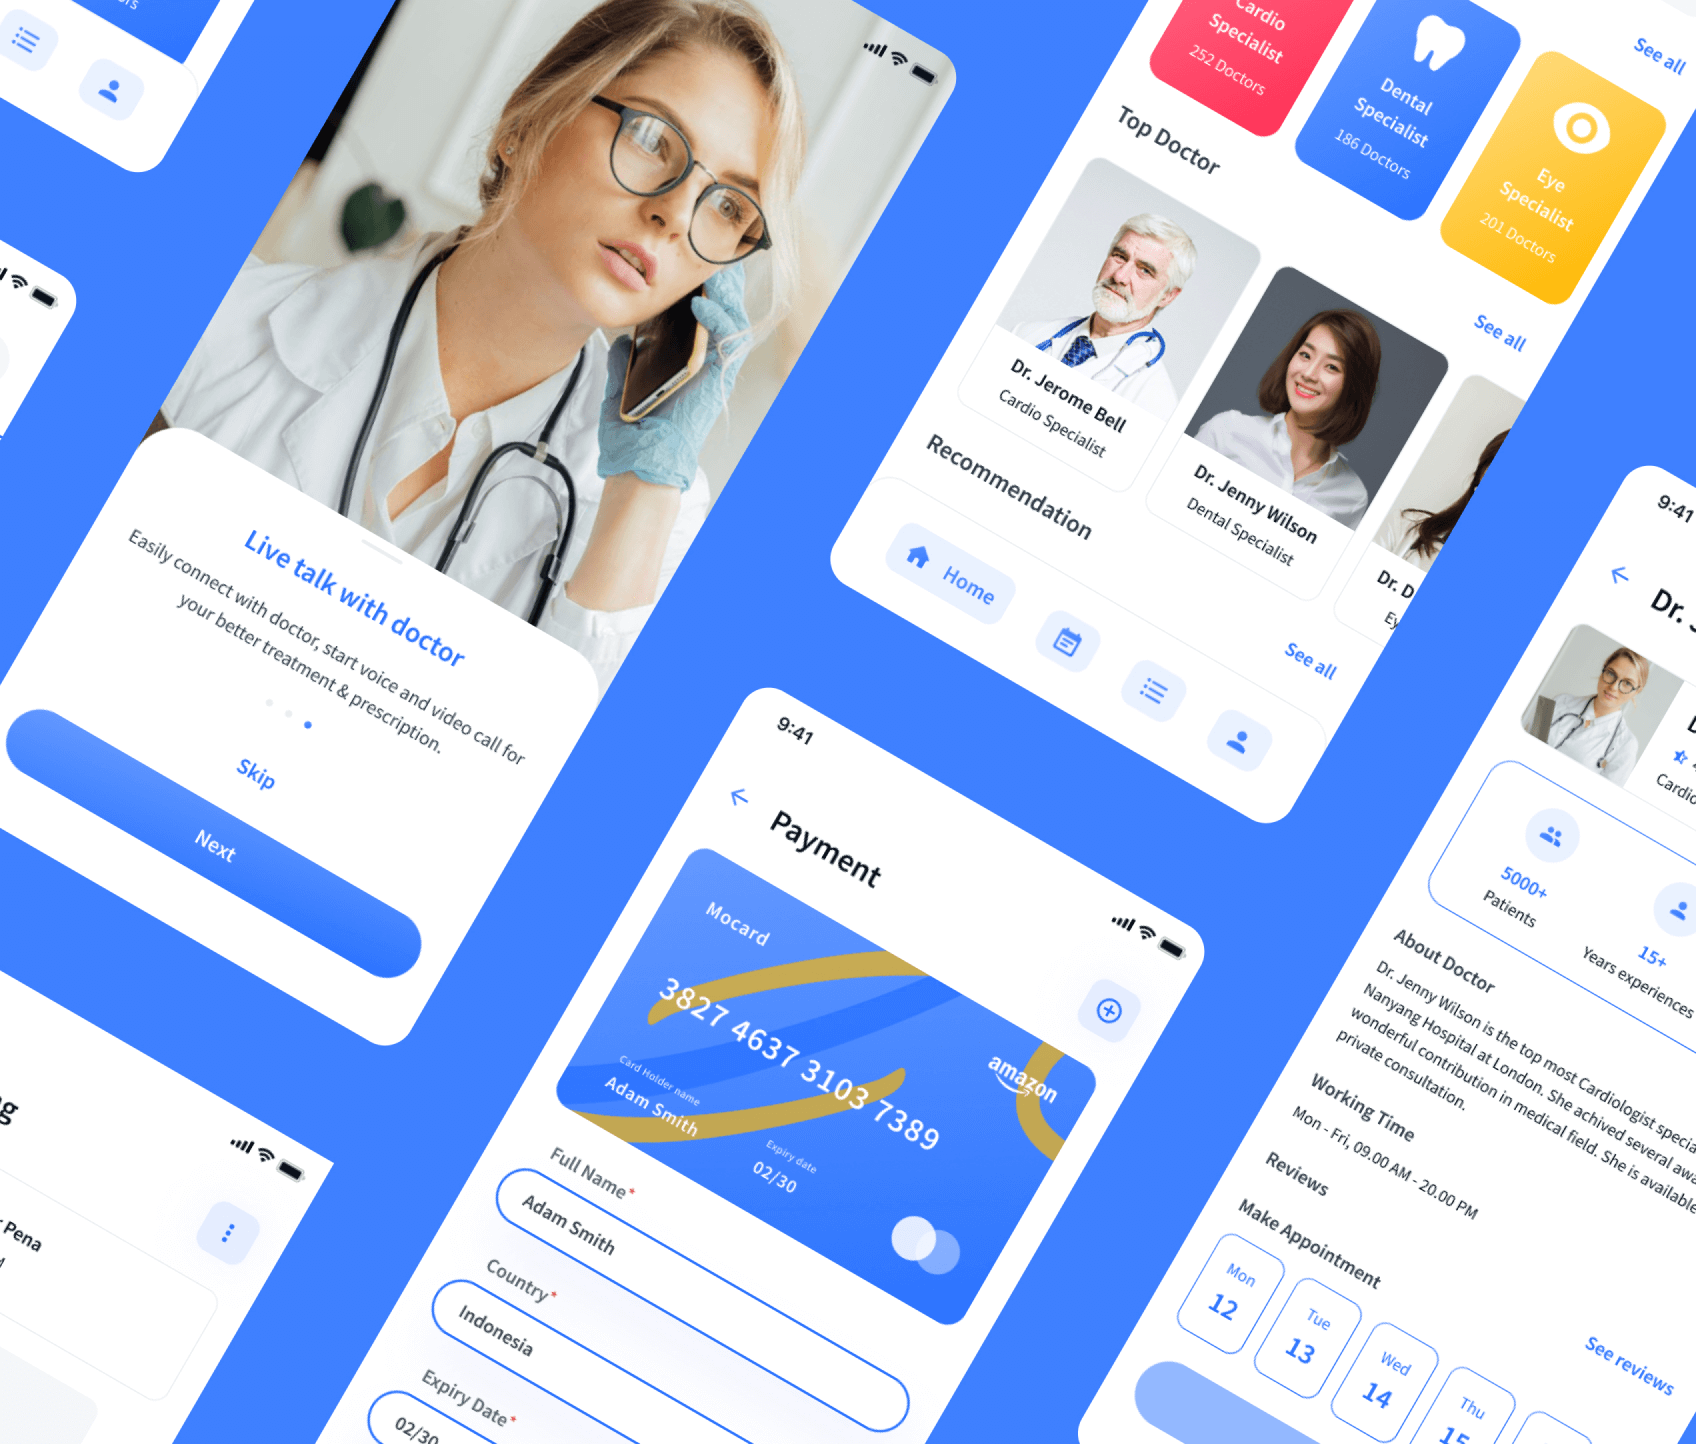 Healthcare staffing marketplace platform